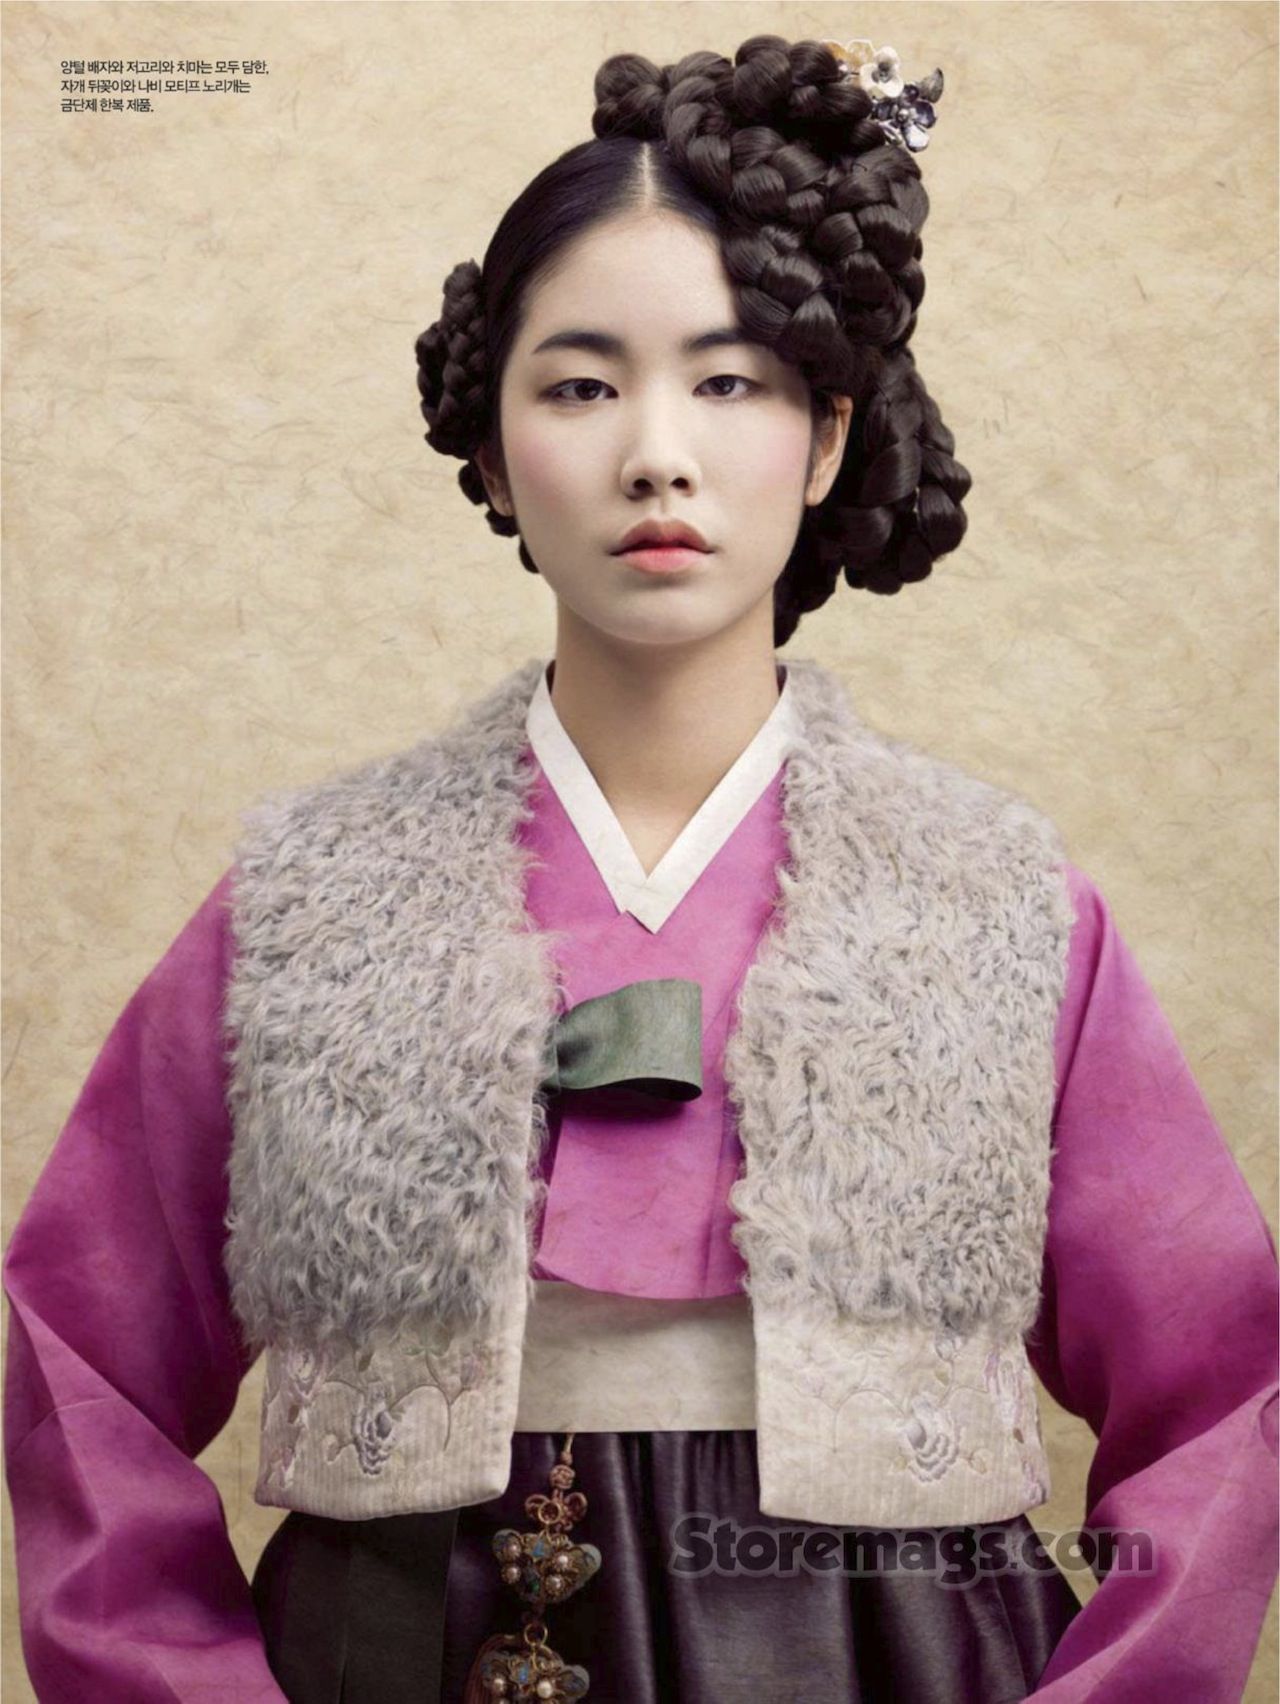 Lee Eun Bin